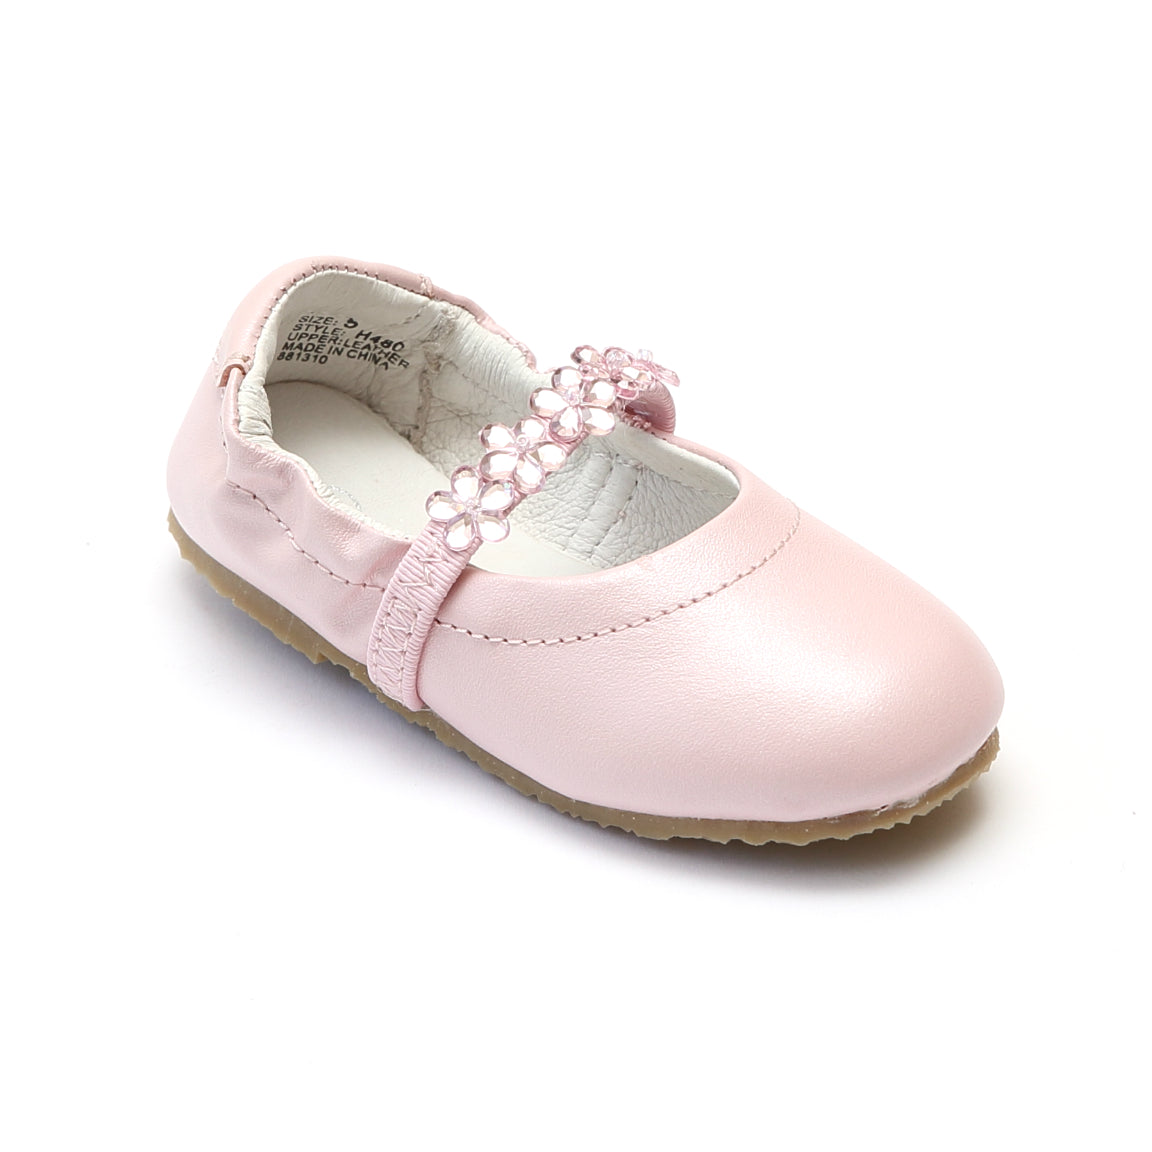 infant size 5 ballet shoes